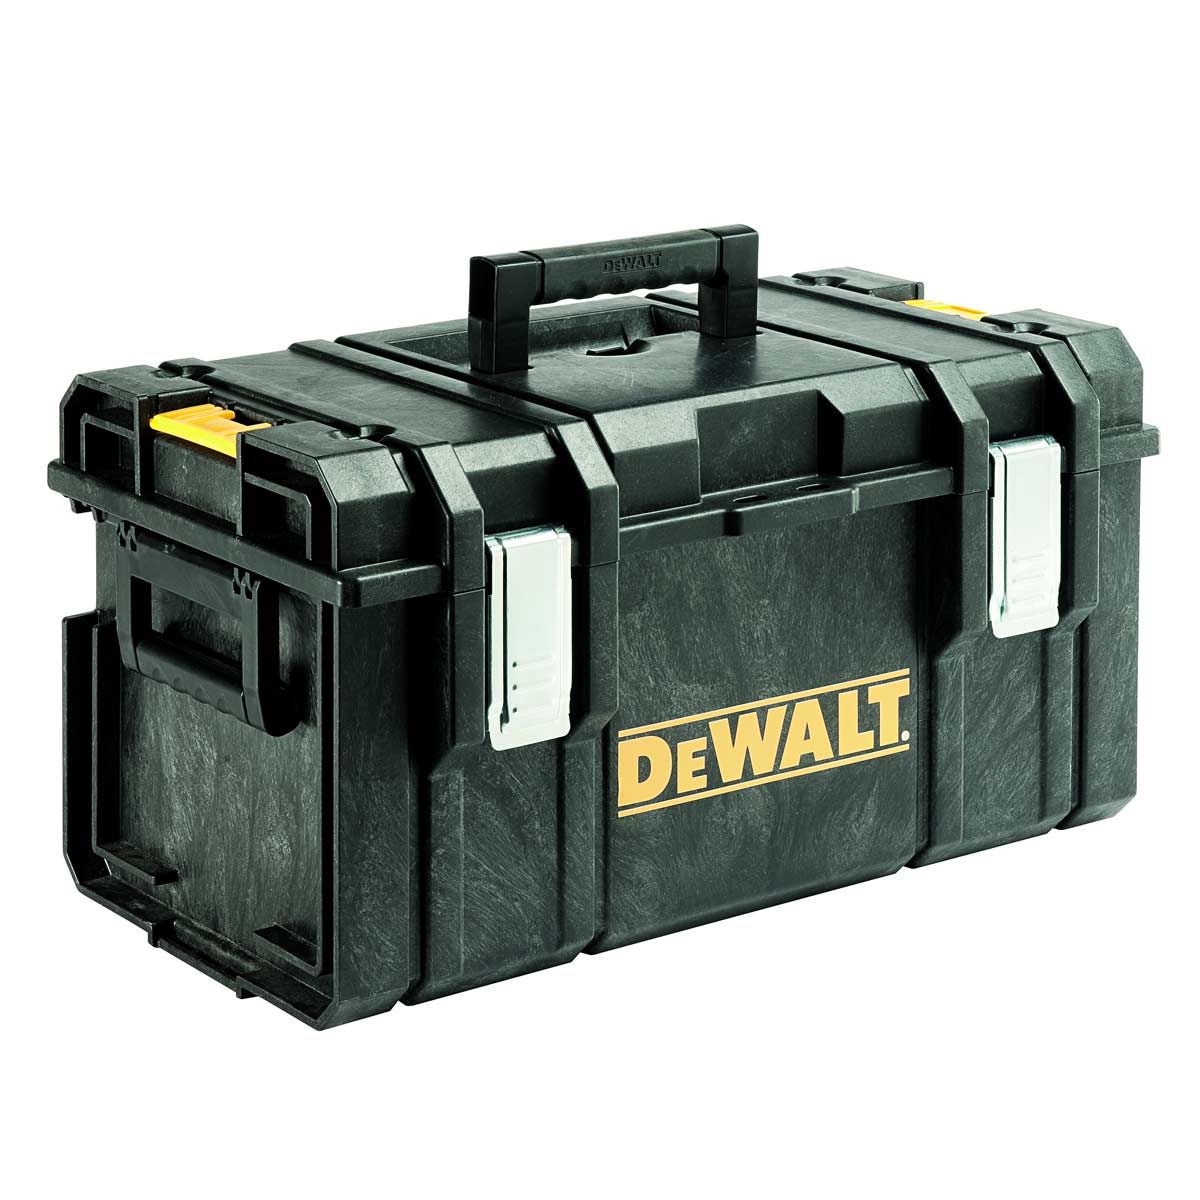 DeWalt DCK694P3 18V XR 6 Piece Kit 3 x 5.0Ah Batteries, Charger & Tough System Case